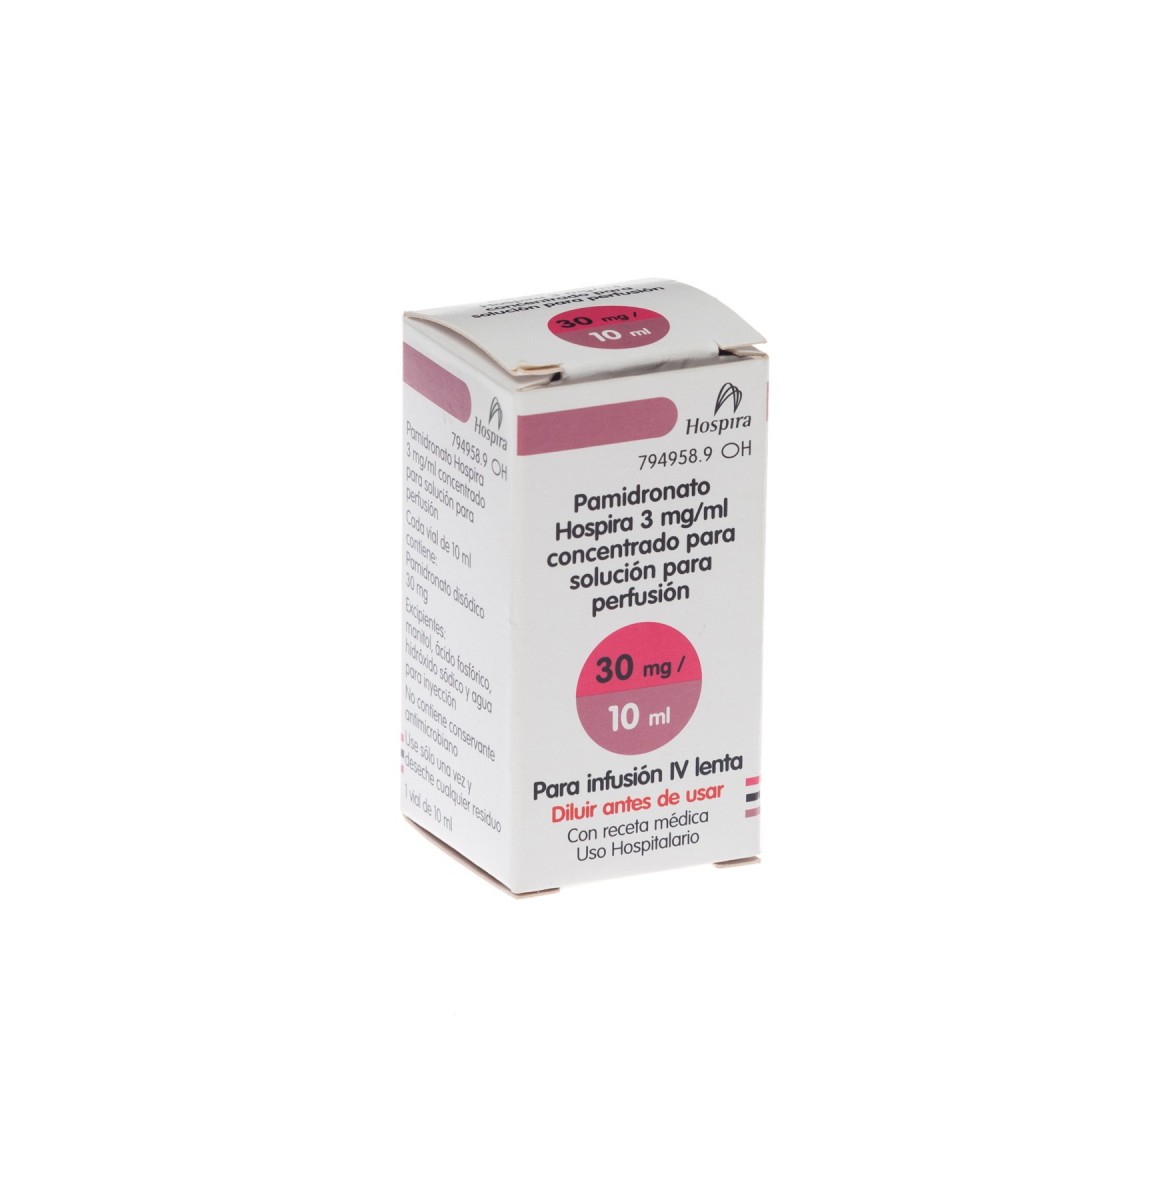 PAMIDRONATO HOSPIRA 3 mg/ml CONCENTRADO PARA SOLUCION PARA PERFUSION , 5 viales de 5 ml fotografía del envase.